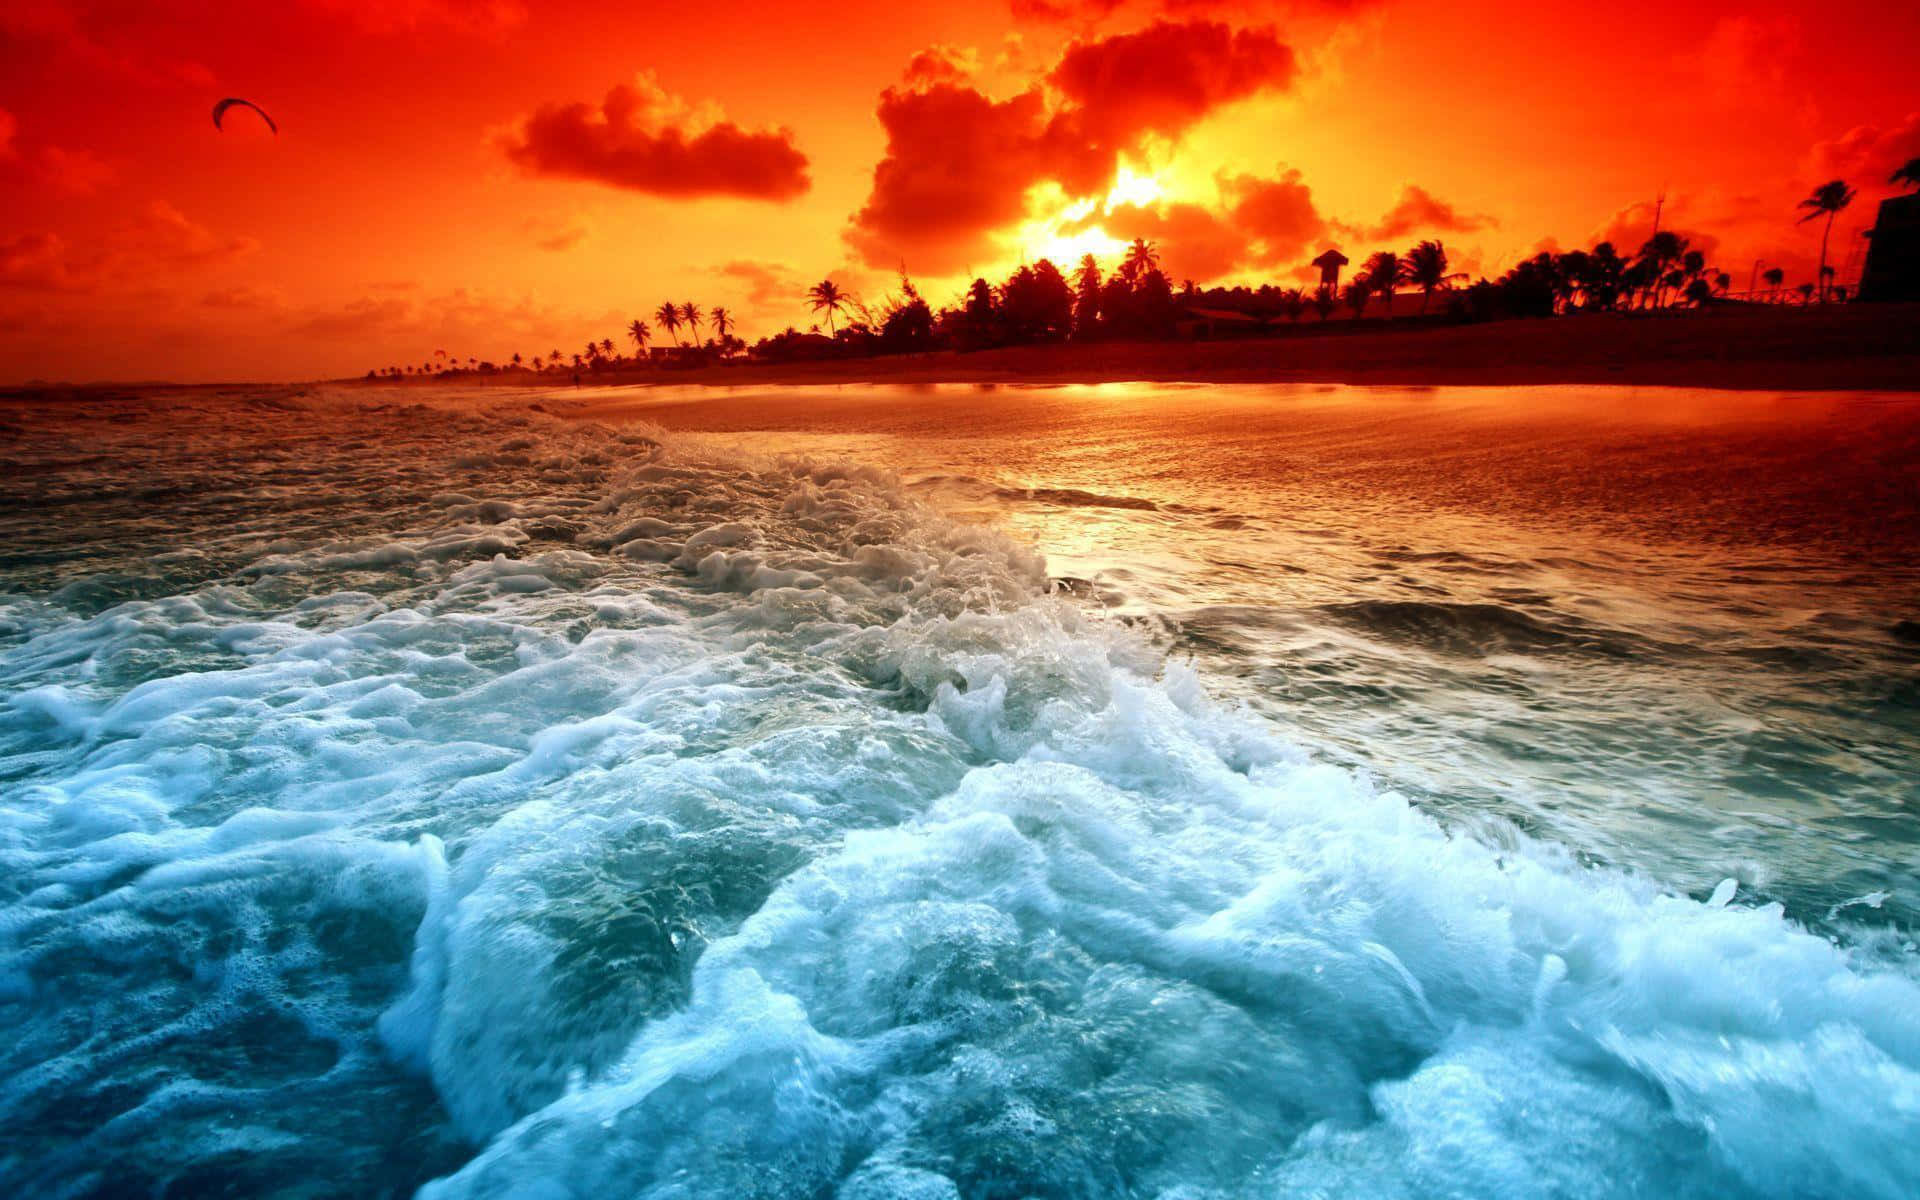 Stunning Ocean View at Sunset Wallpaper